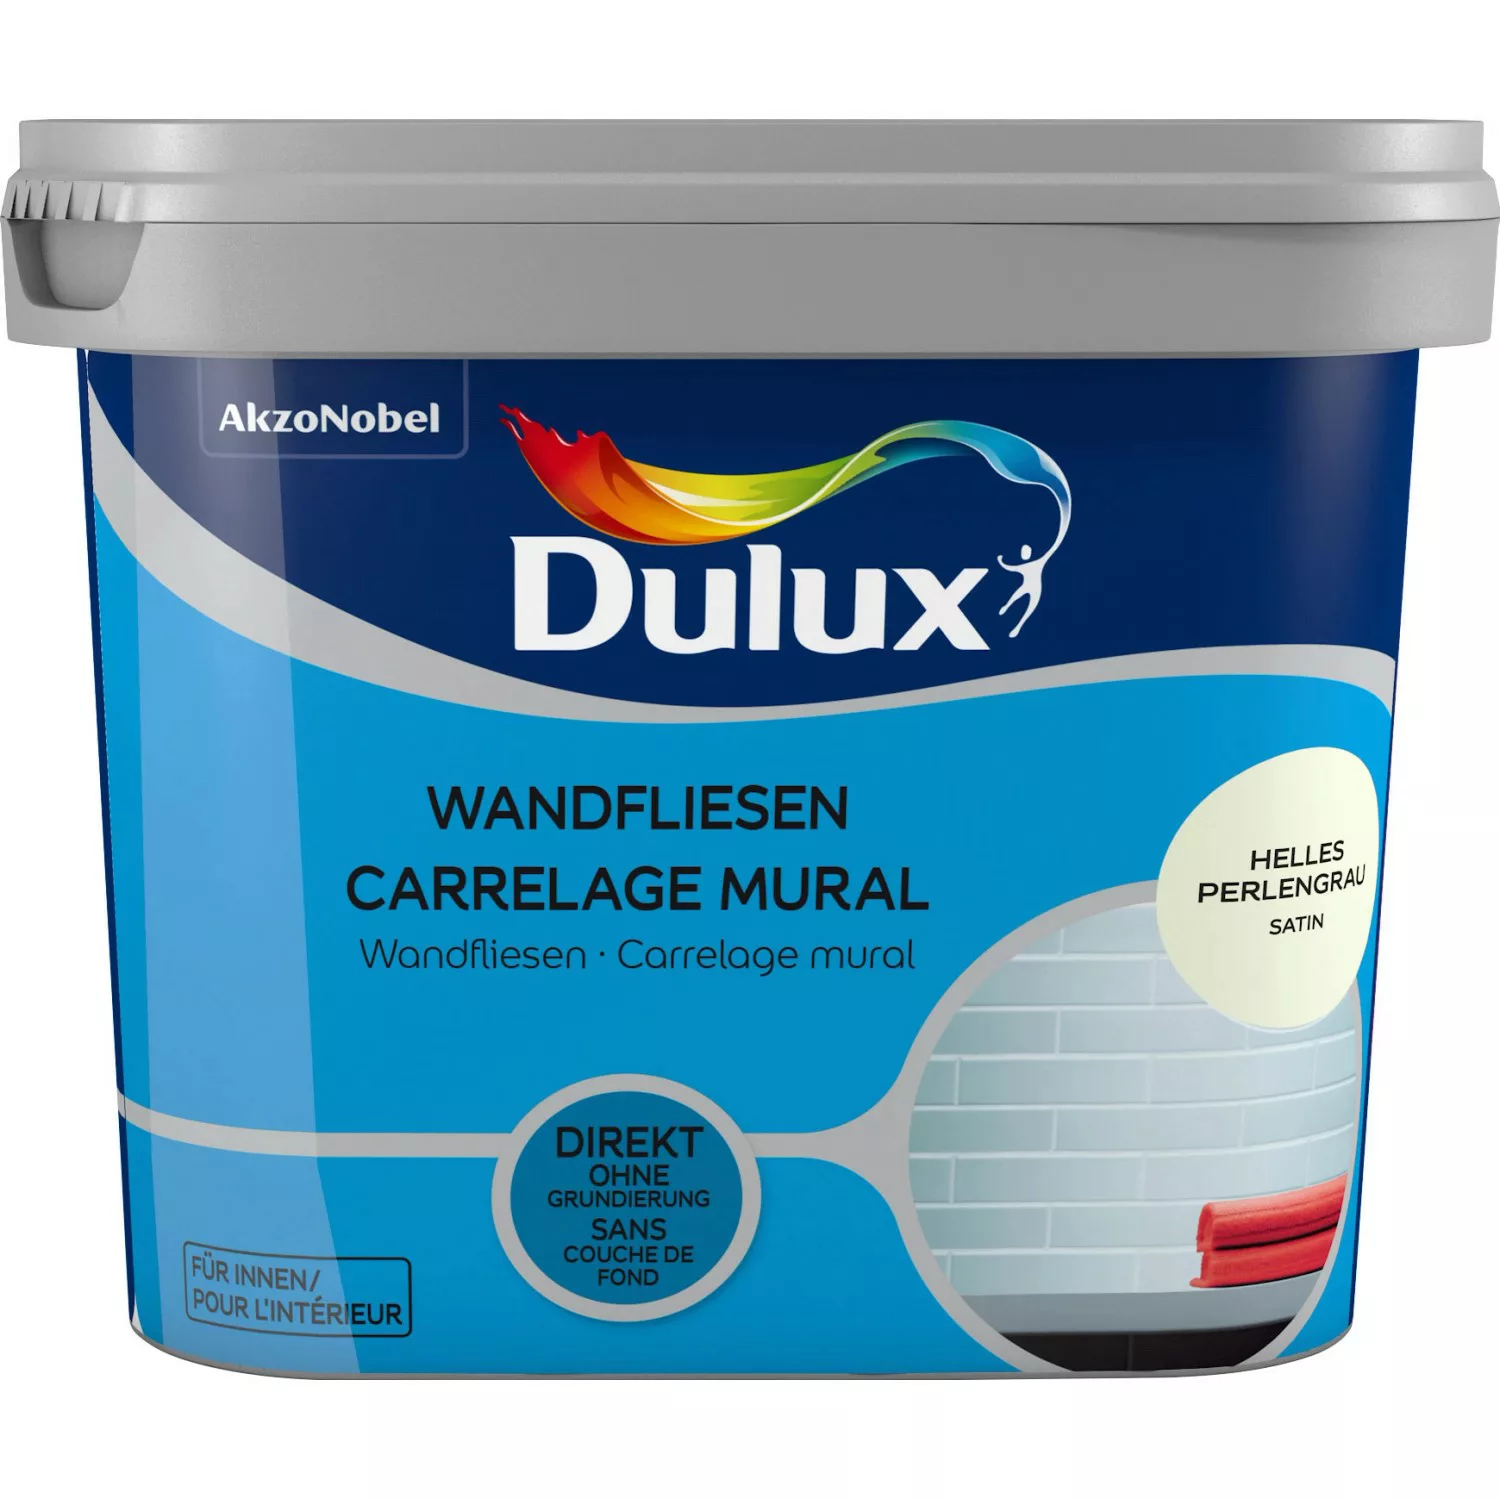 Dulux Fresh Up Wandfliesenlack Satin Helles Perlgrau 750 ml günstig online kaufen